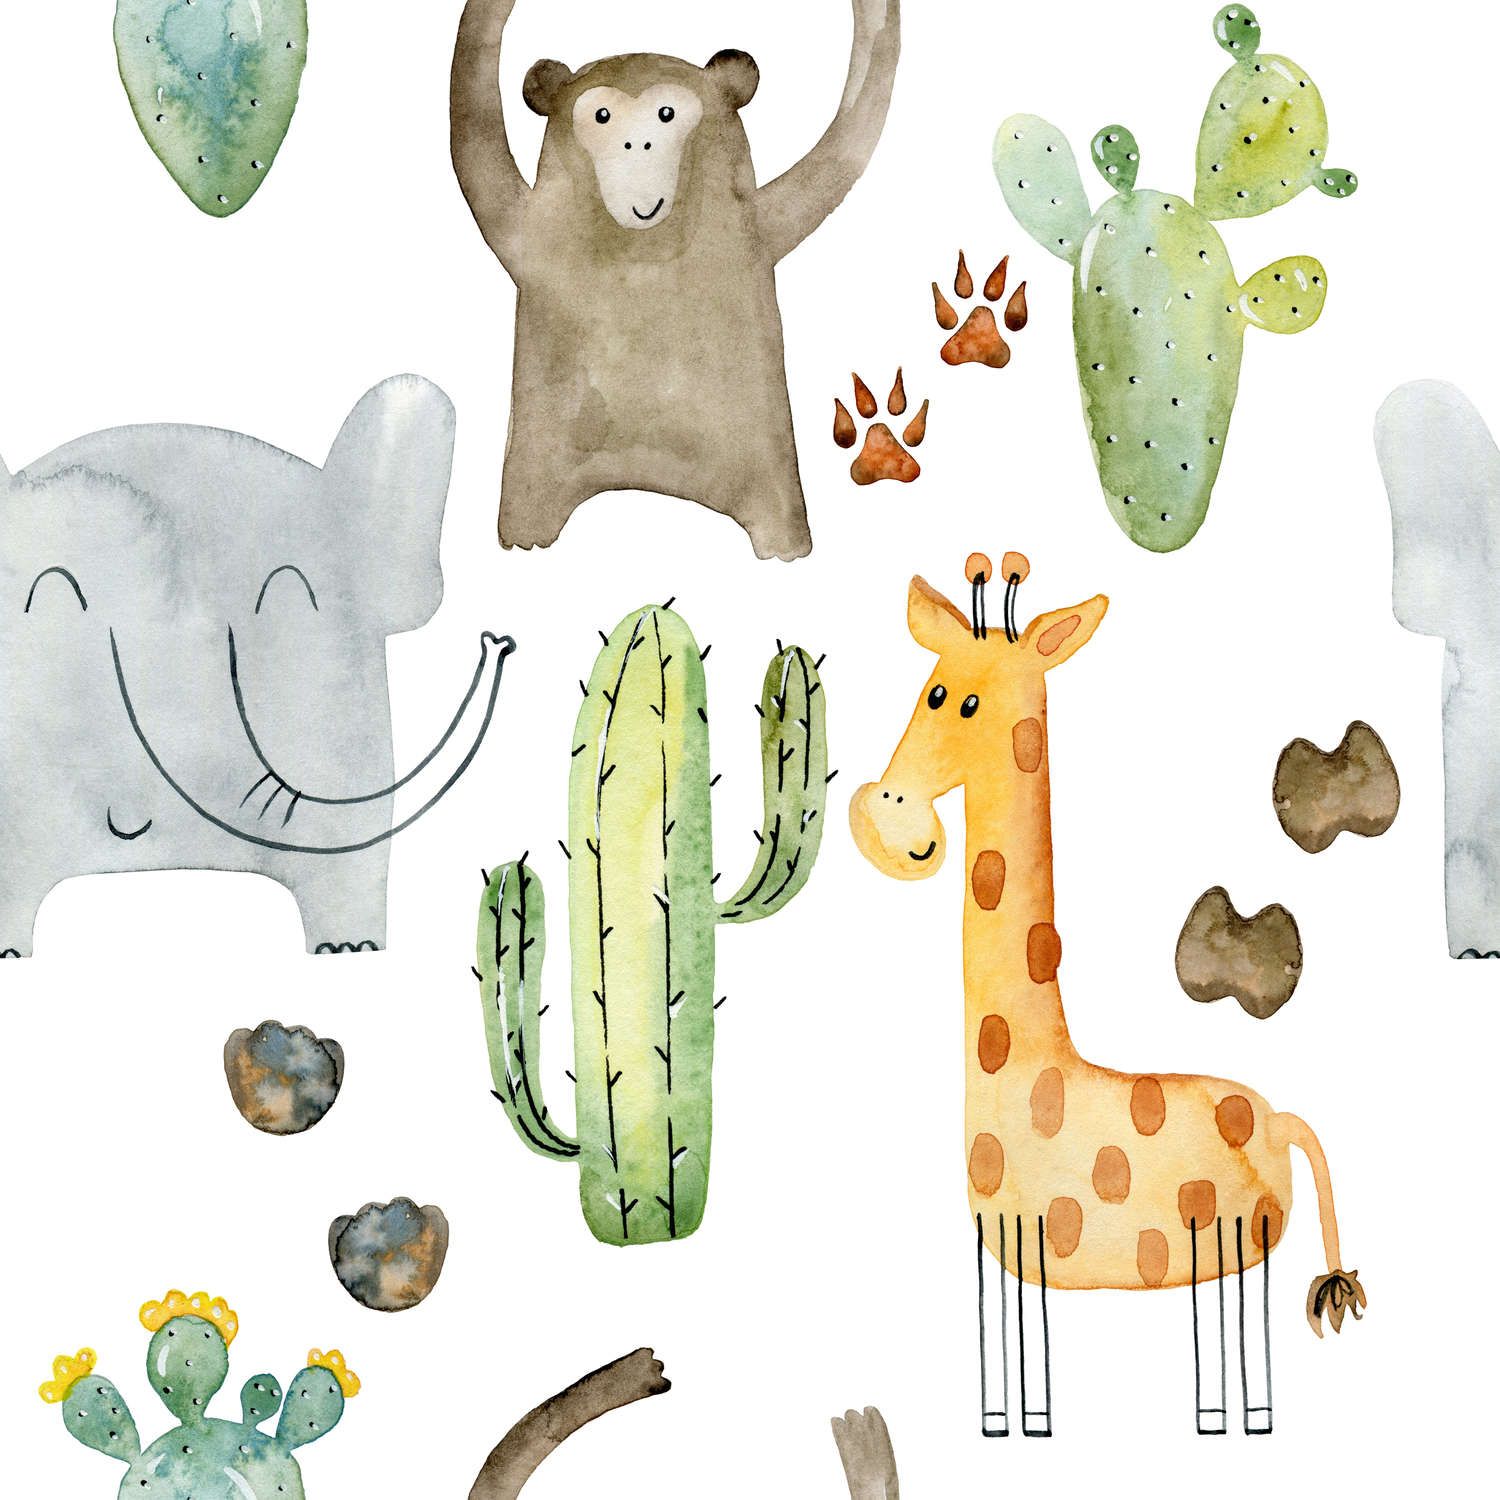             papiers peints à impression numérique avec animaux et cactus - intissé structuré
        